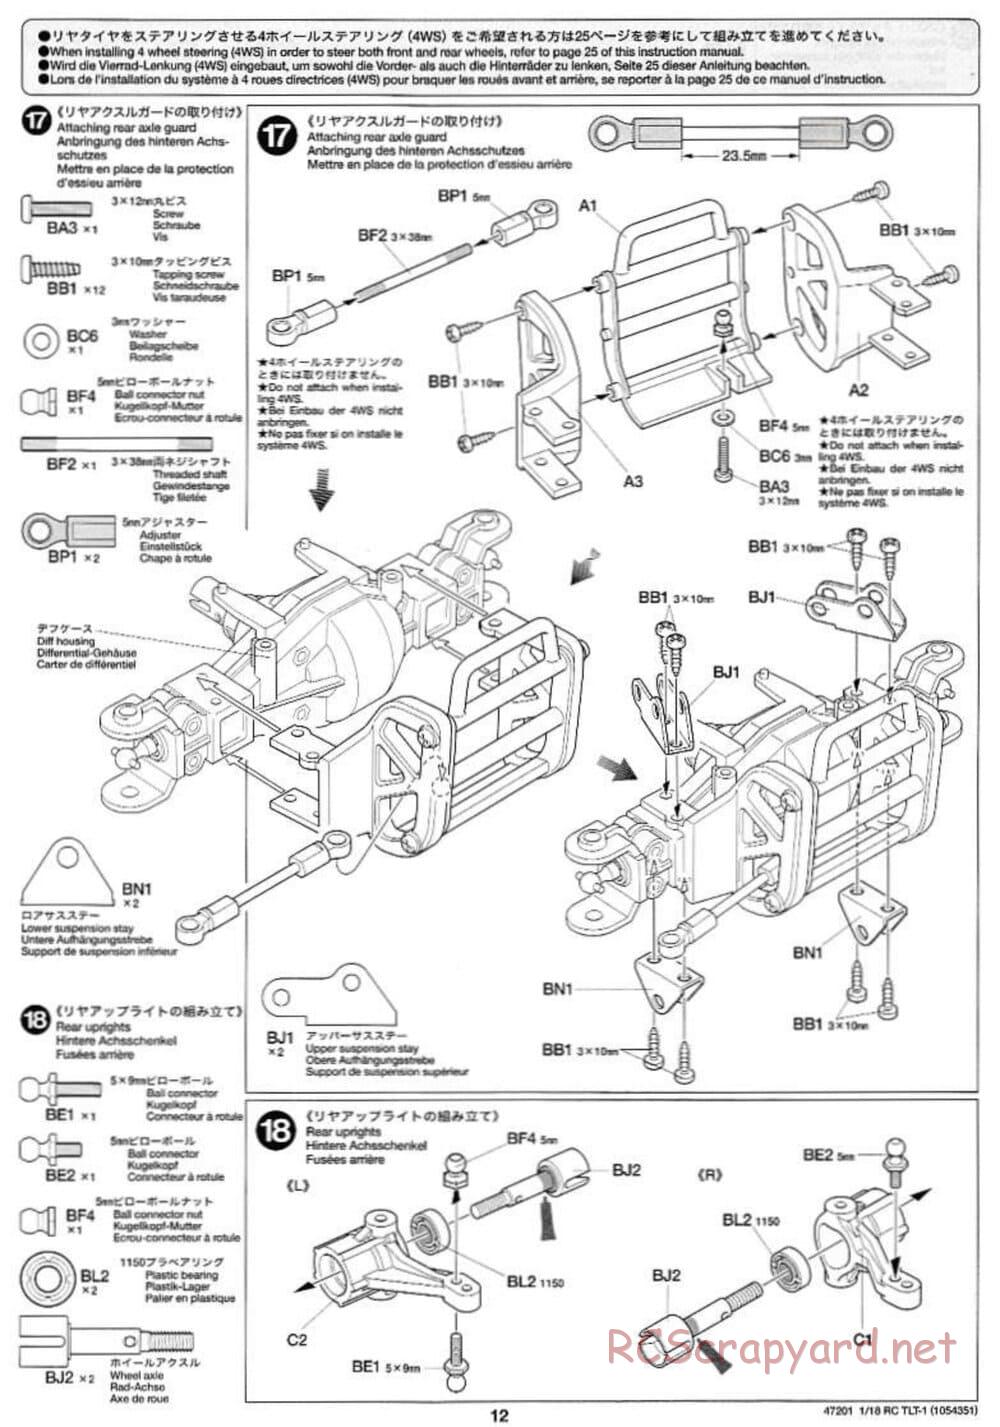 Tamiya - Rock Buster - TLT-1 Chassis - Manual - Page 12